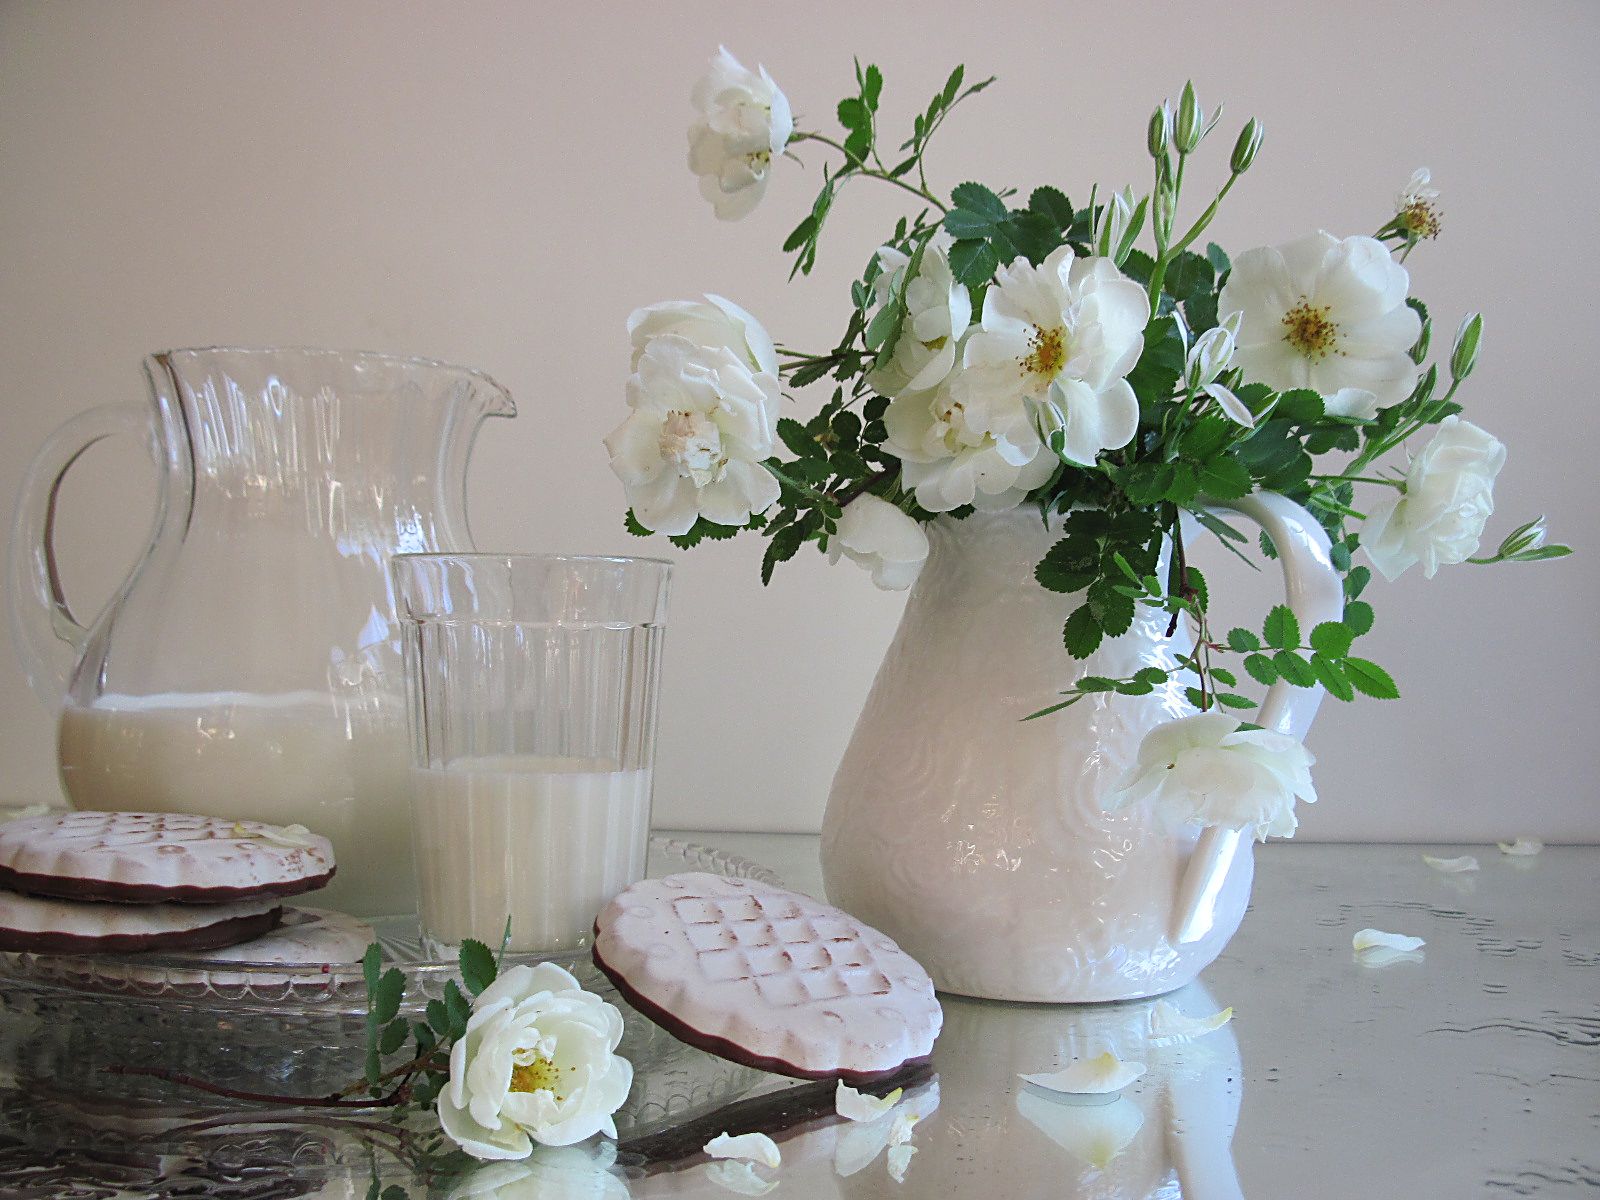 цветы, букет, розы, молоко, печенье, кувшины, стакан, поднос, утро, белый цвет, Наталия Тихомирова